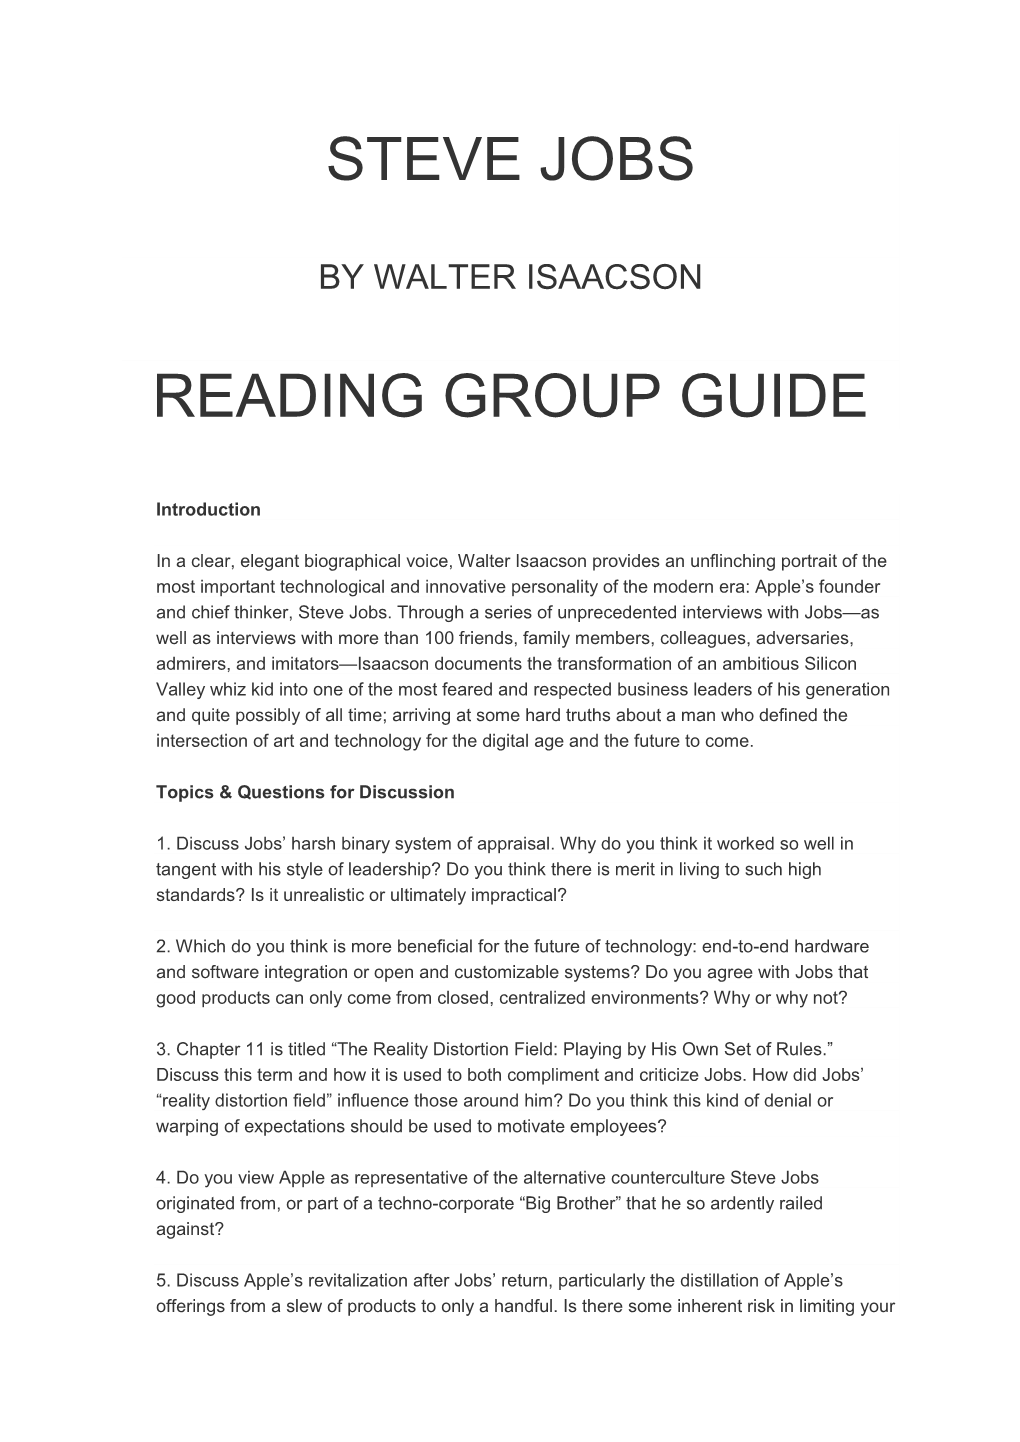 Steve Jobs Reading Group Guide